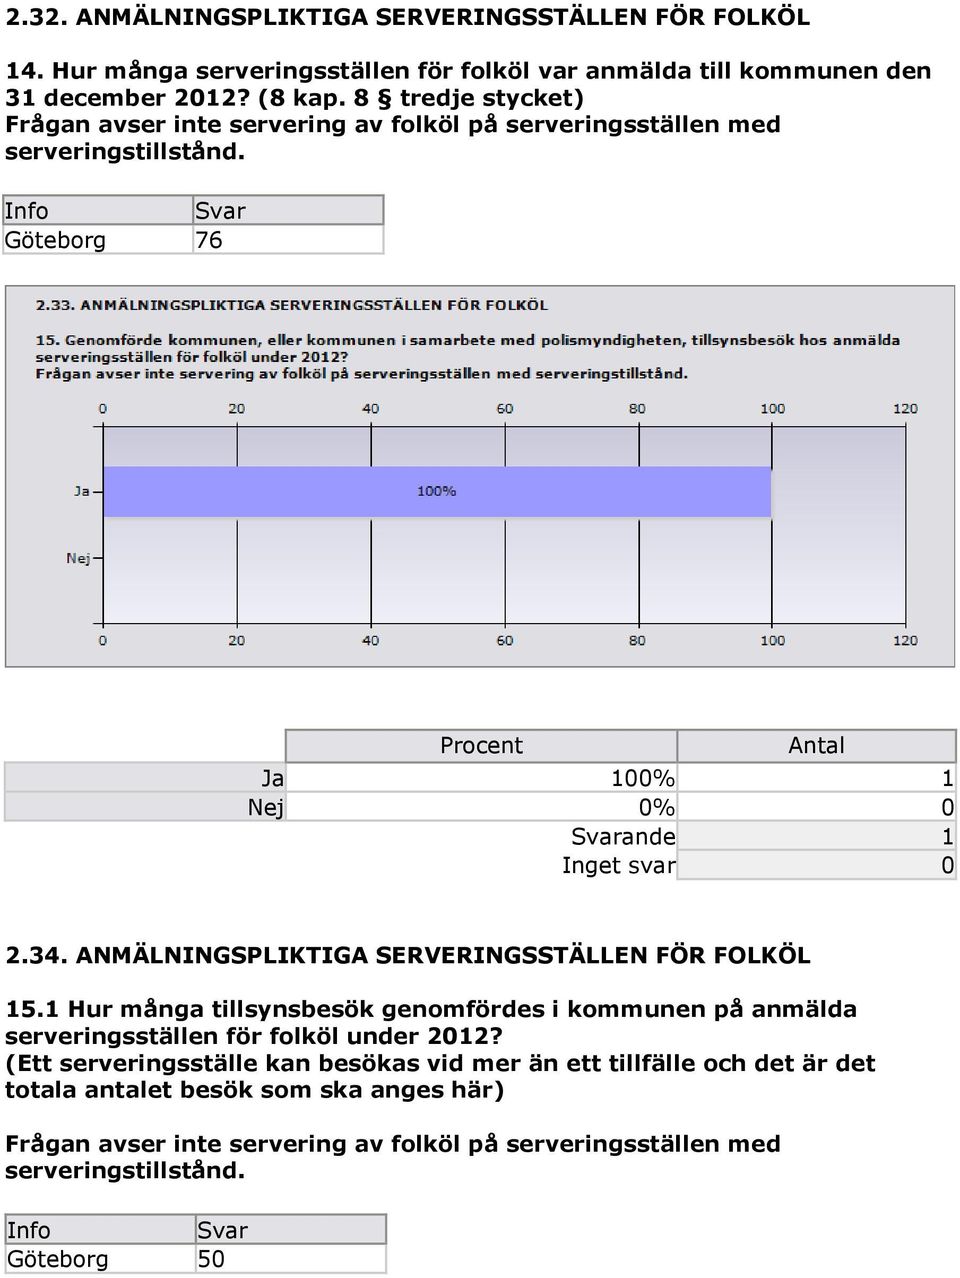 ANMÄLNINGSPLIKTIGA SERVERINGSSTÄLLEN FÖR FOLKÖL 15.1 Hur många tillsynsbesök genomfördes i kommunen på anmälda serveringsställen för folköl under 2012?